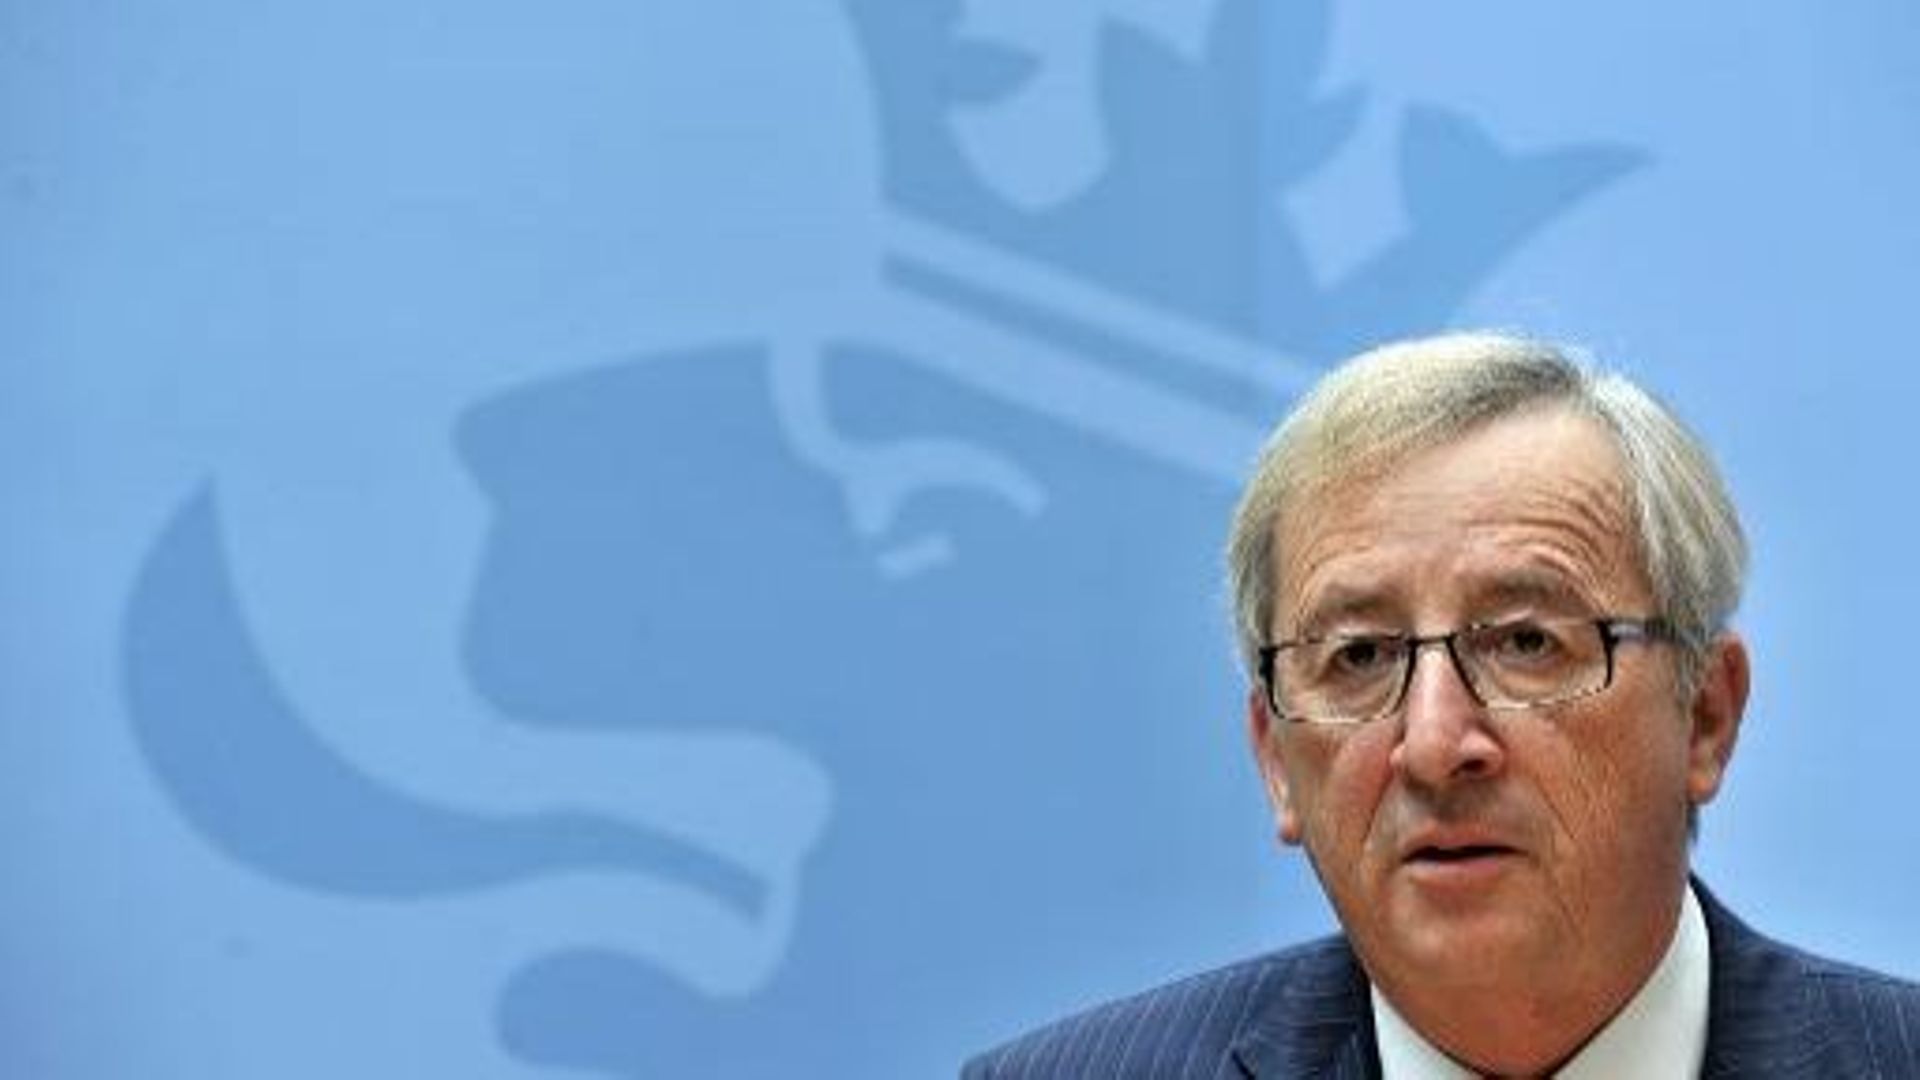 Le Premier ministre luxembourgeois sortant, Jean-Claude Juncker, le 28 novembre 2011 à Luxembourg